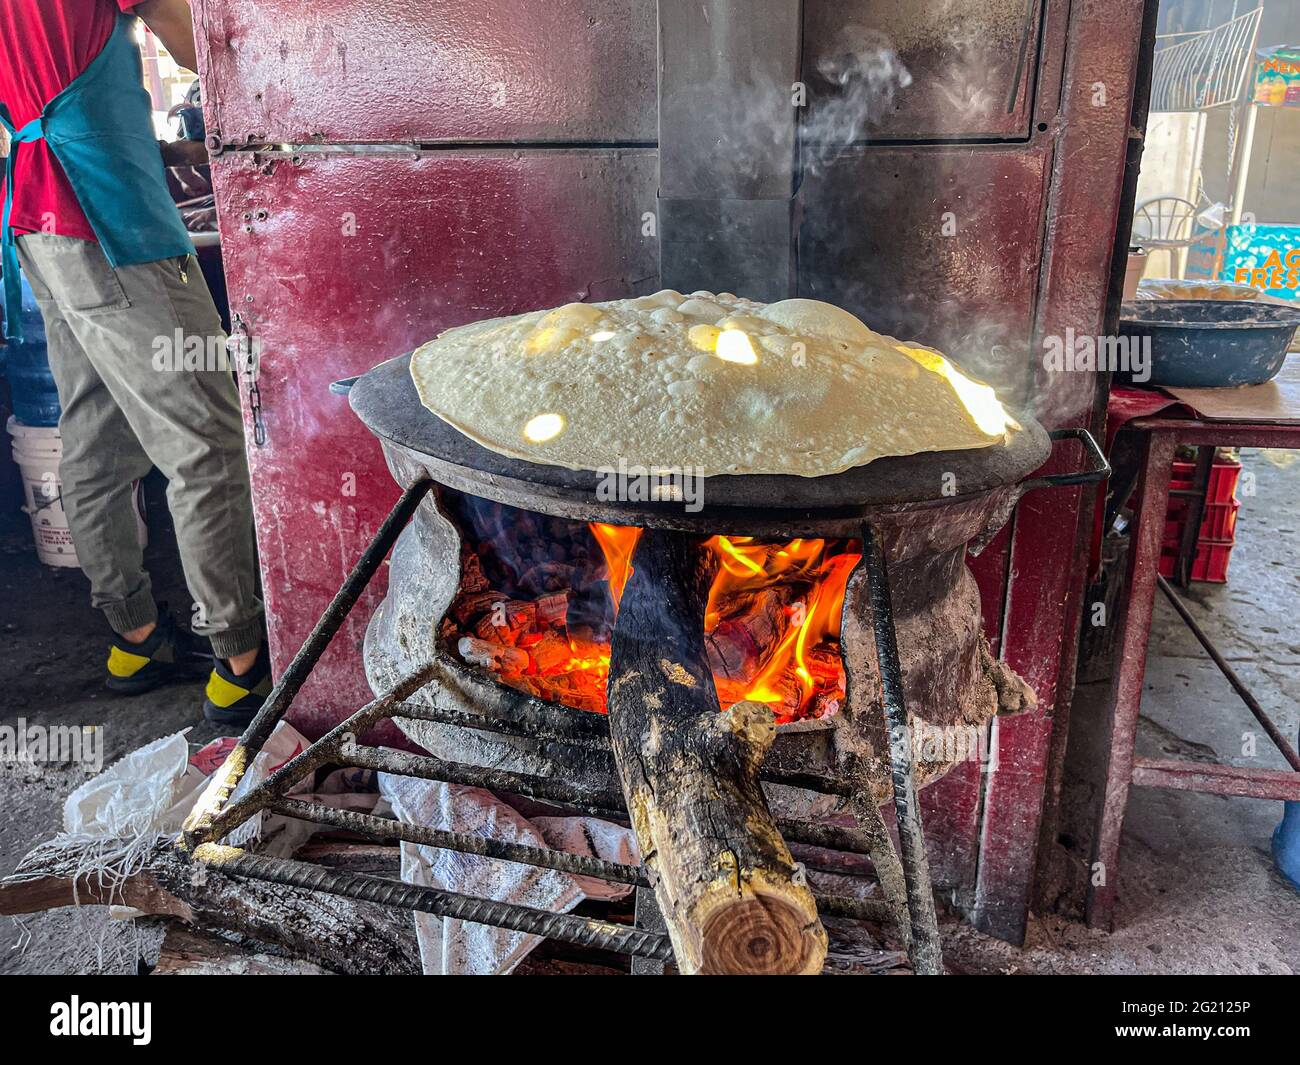 https://c8.alamy.com/comp/2G2125P/flour-tortillas-cooked-on-a-steel-comal-with-the-fire-of-the-mesquite-wood-embers-at-the-burros-de-carne-asada-stalls-in-the-tiaguis-del-hectro-espino-sonoran-food-on-the-embers-food-food-meals-food-photo-by-luis-gutierrez-norte-photo-tortillas-de-harina-cocida-en-comal-de-acero-con-el-fuego-de-las-brasas-de-lea-de-mezquite-en-los-puestos-de-burros-de-carne-asada-en-el-tiaguis-del-hectro-espino-comida-sonorense-en-las-brasas-alimentos-comida-comidas-food-photo-by-luis-gutierrez-norte-photo-2G2125P.jpg